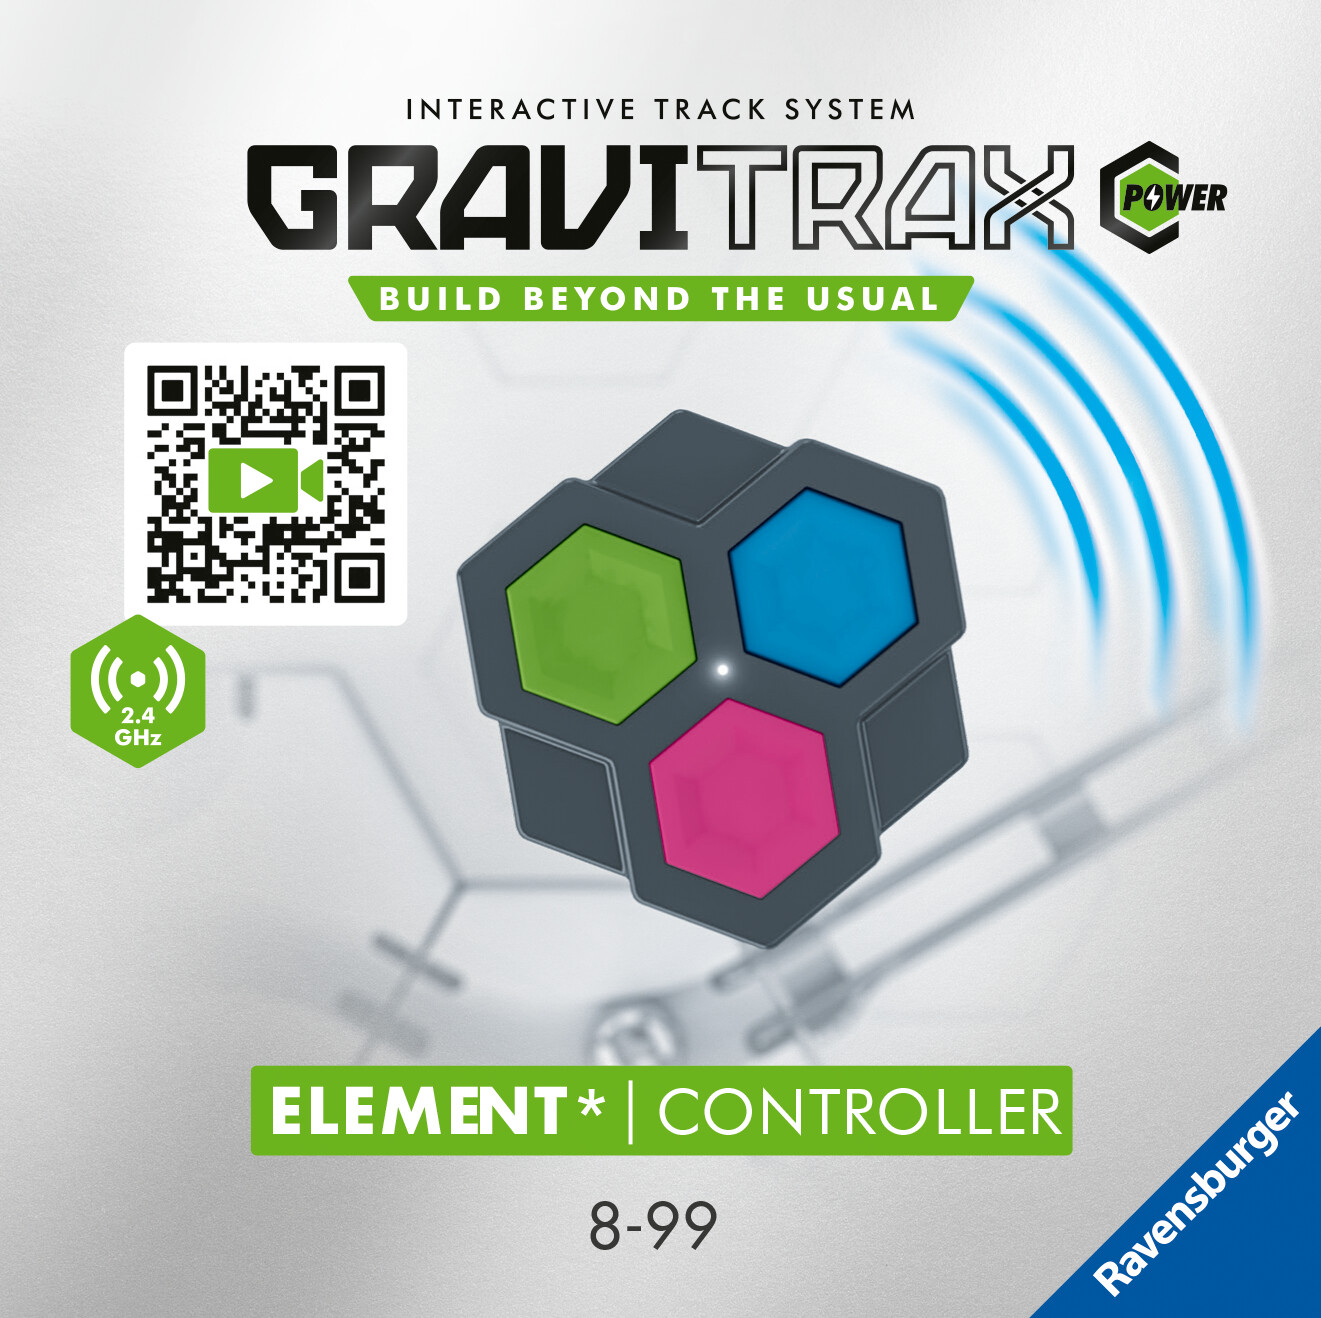 Ravensburger gravitrax power element controller, gioco innovativo ed educativo stem, 8+ anni, estensione - GRAVITRAX